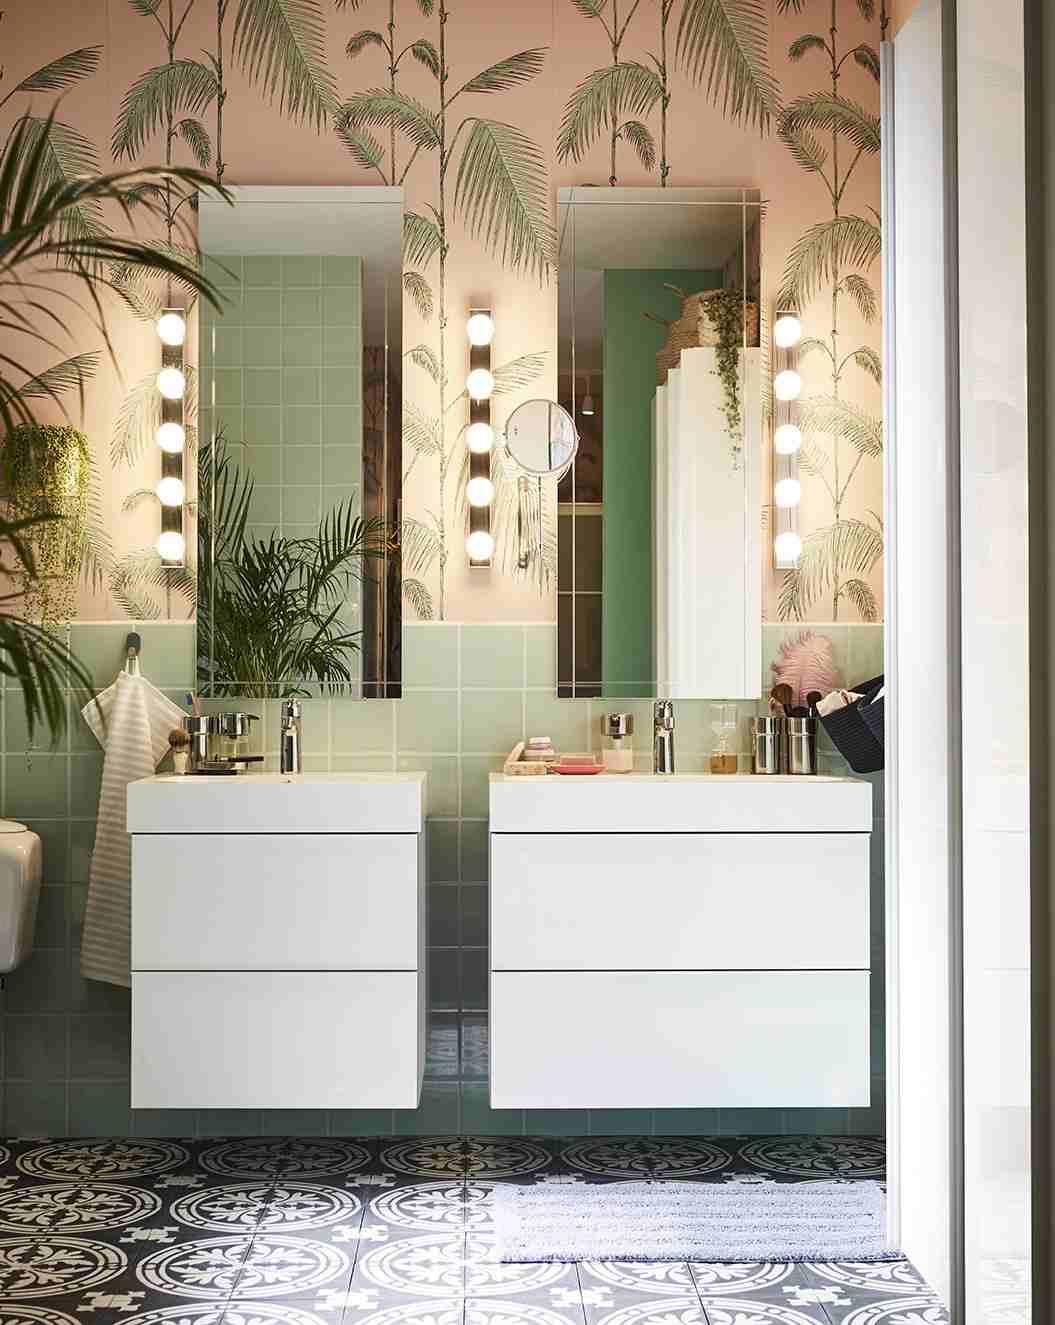 Ikea-Badezimmer 2020 Badmöbel in Weiß und Tapeten mit floralen Mustern statt Fliesen an der Wand und Spiegel mit Beleuchtung